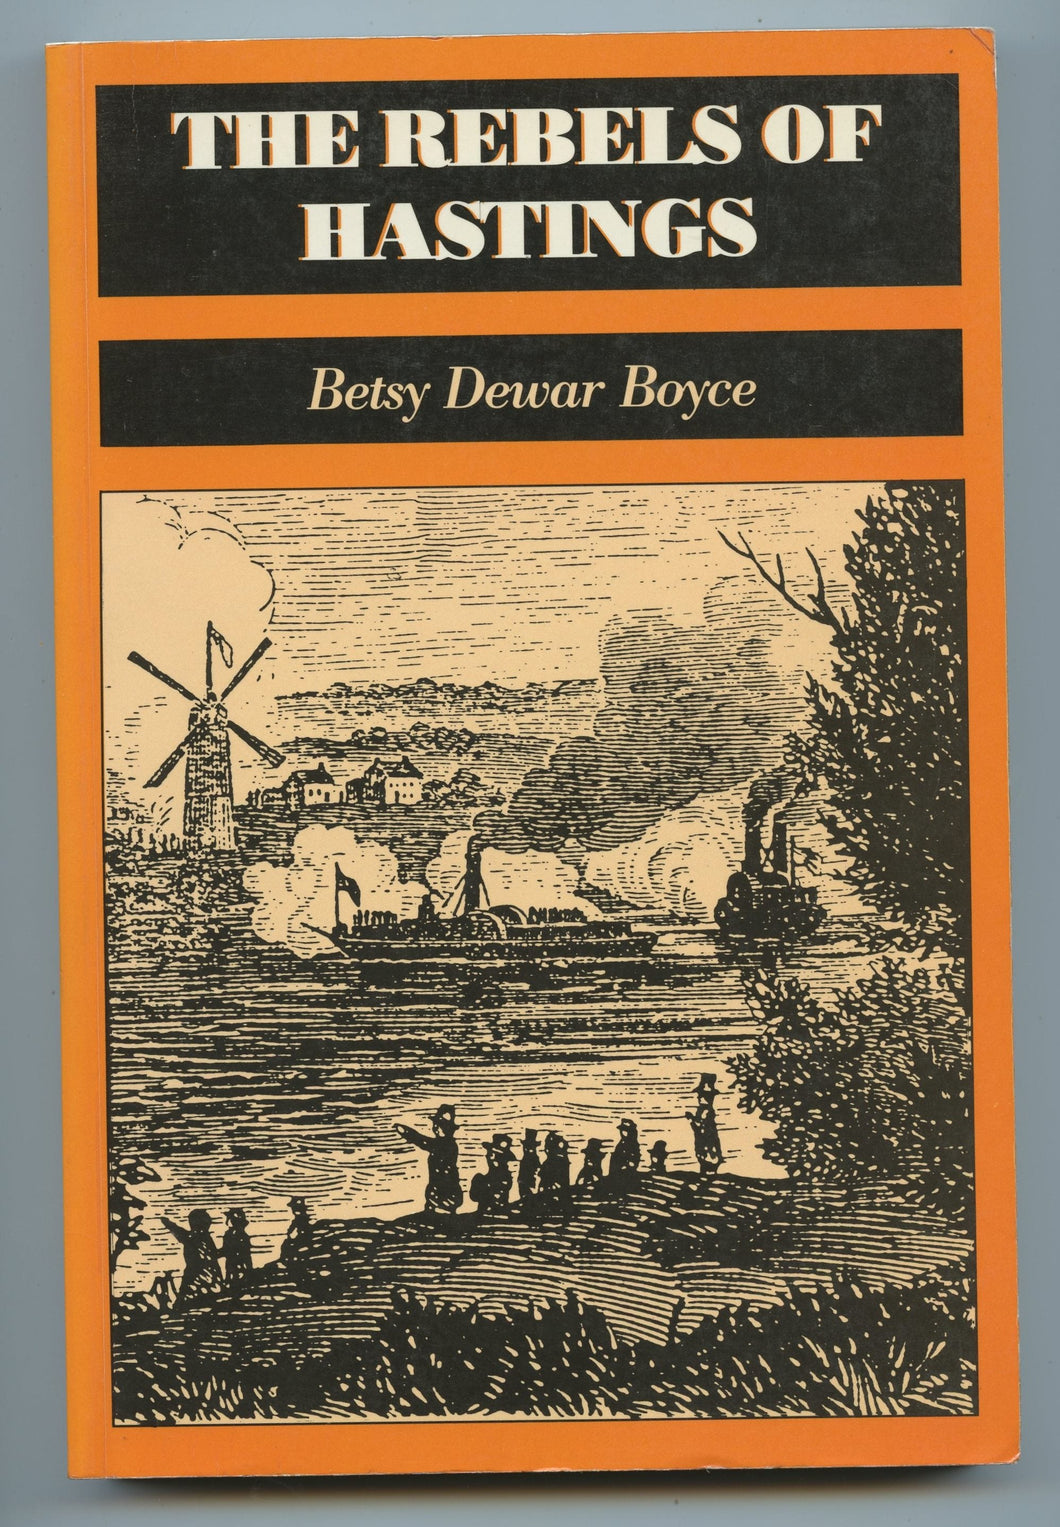 The Rebels of Hastings